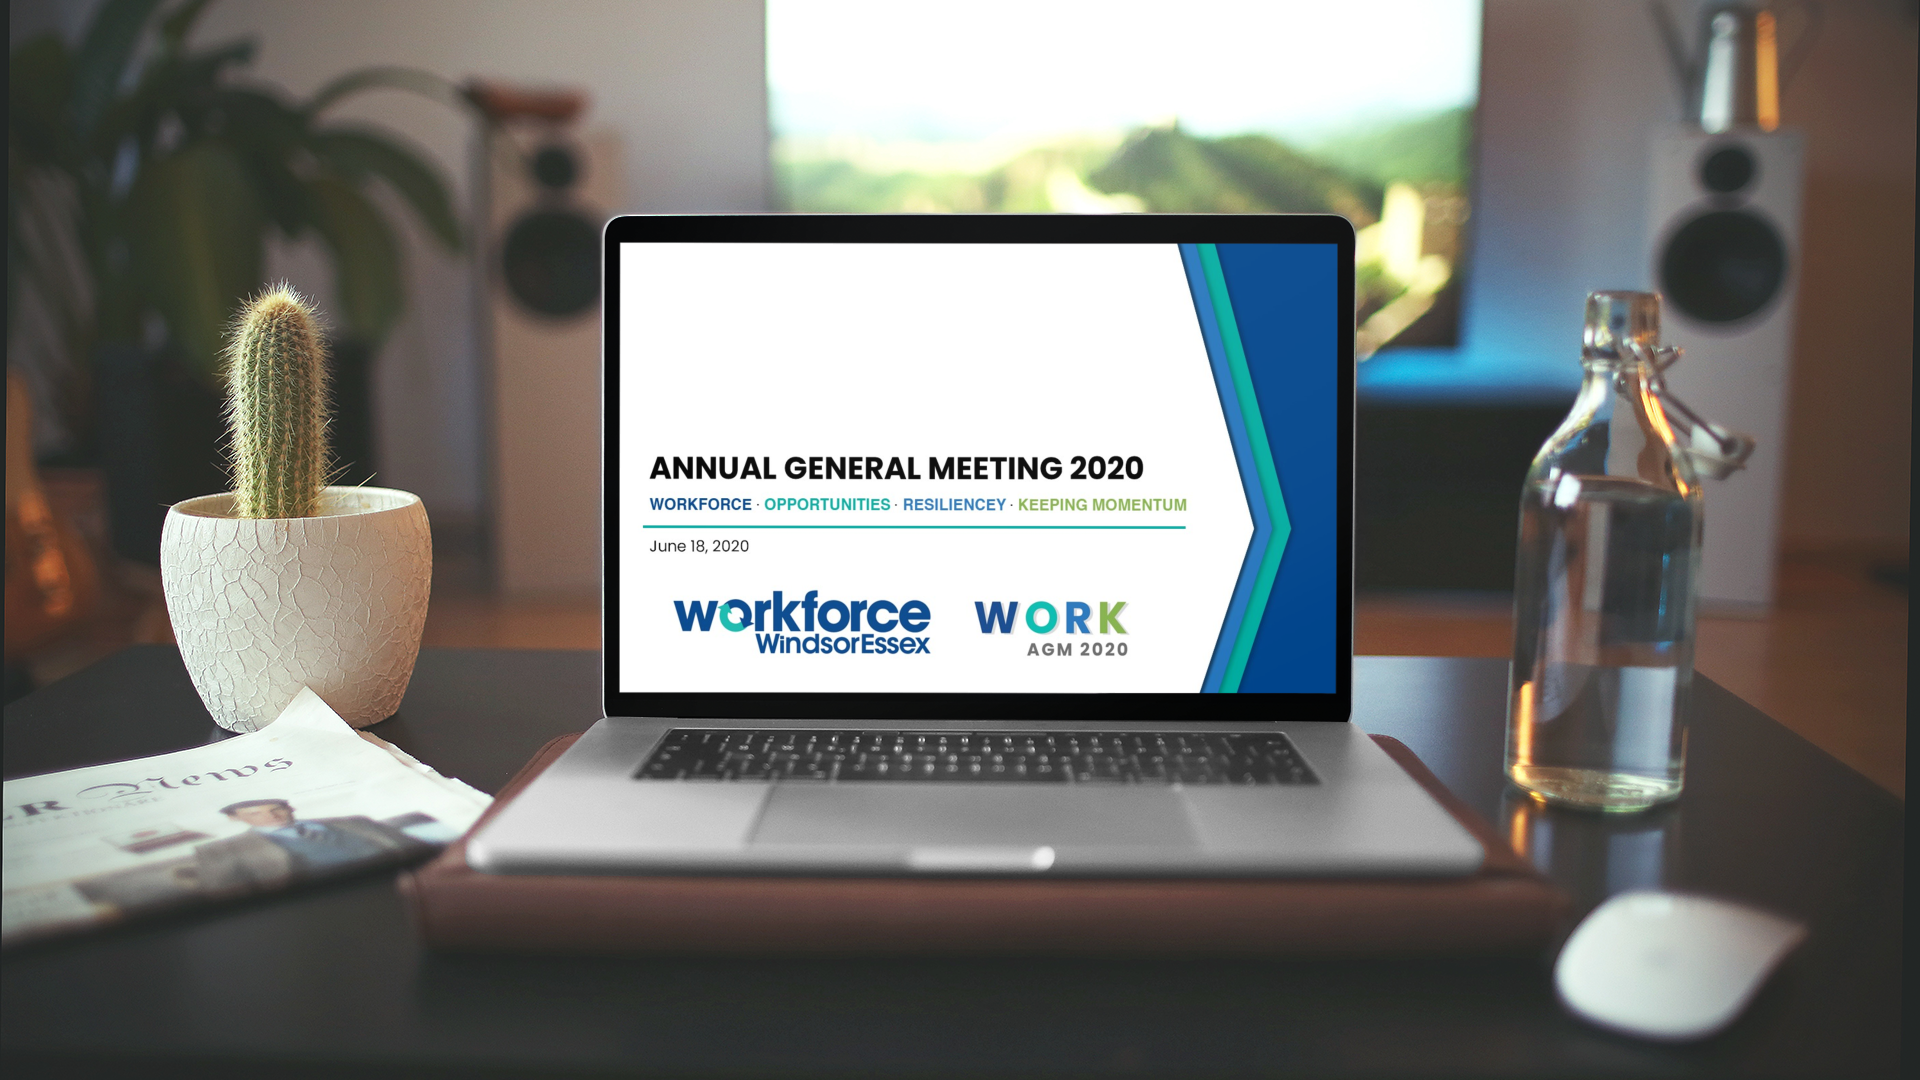 Workforce WindsorEssex Annual General Meeting, June 18, 2020